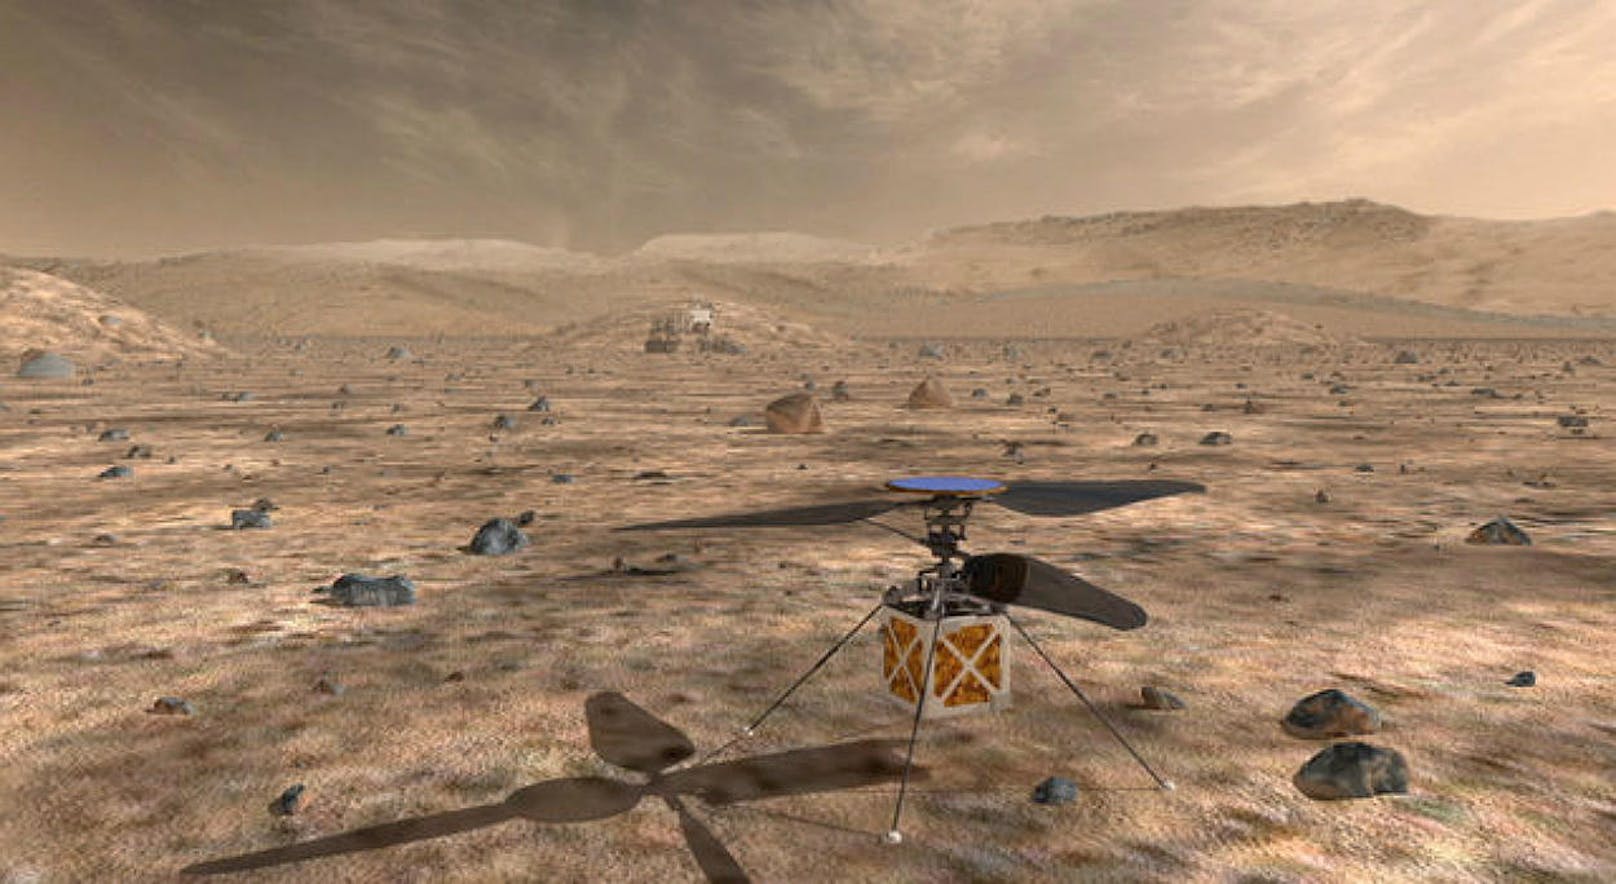 Die US-Raumfahrtbehörde Nasa will den Planeten Mars erstmals mit einem Helikopter erkunden. Das drohnenartige Fluggerät soll nur rund 1,8 Kilo wiegen und nicht viel größer als ein Fußball sein, teilte die Nasa mit.